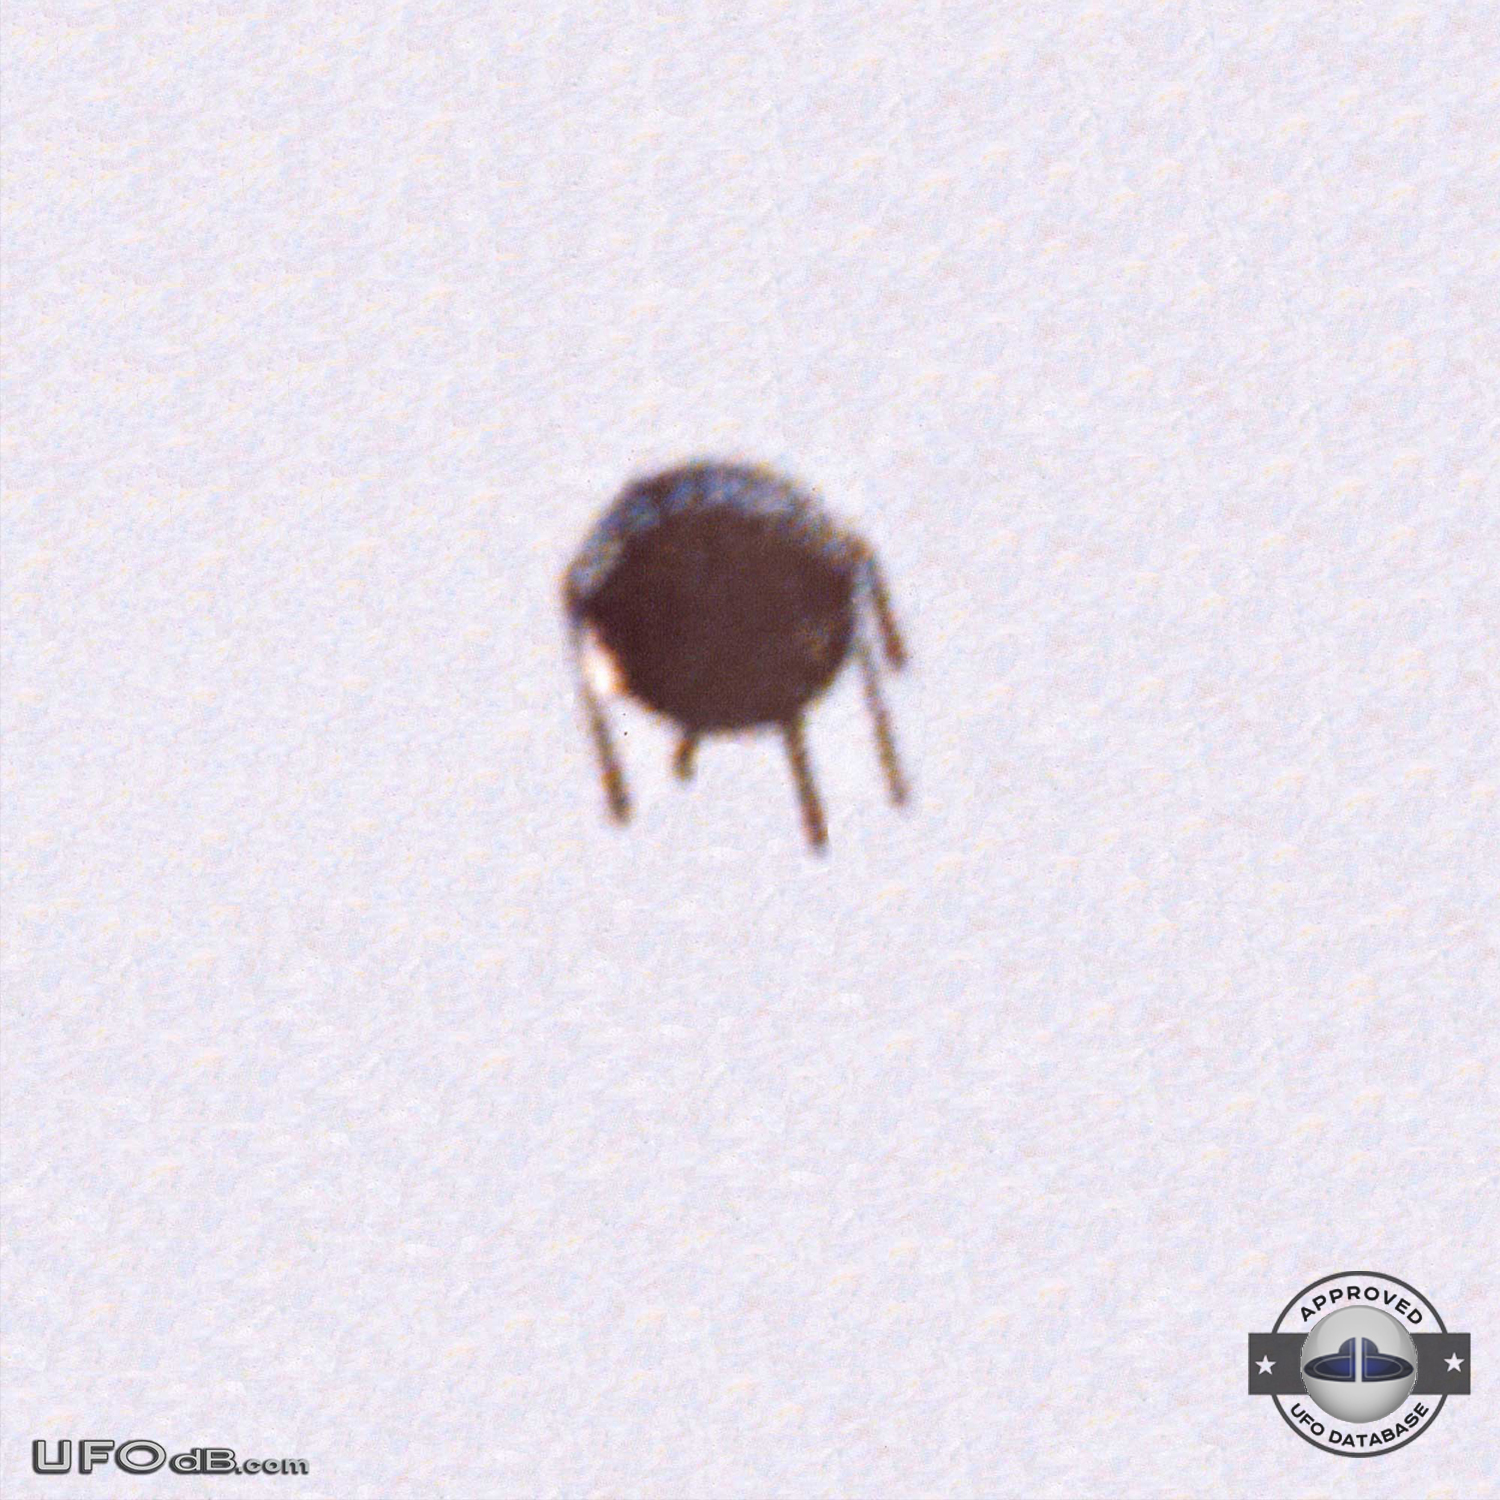 Strange UFO similar to Sputnik satellite seen in Alfena Portugal 1990 UFO Picture #472-1